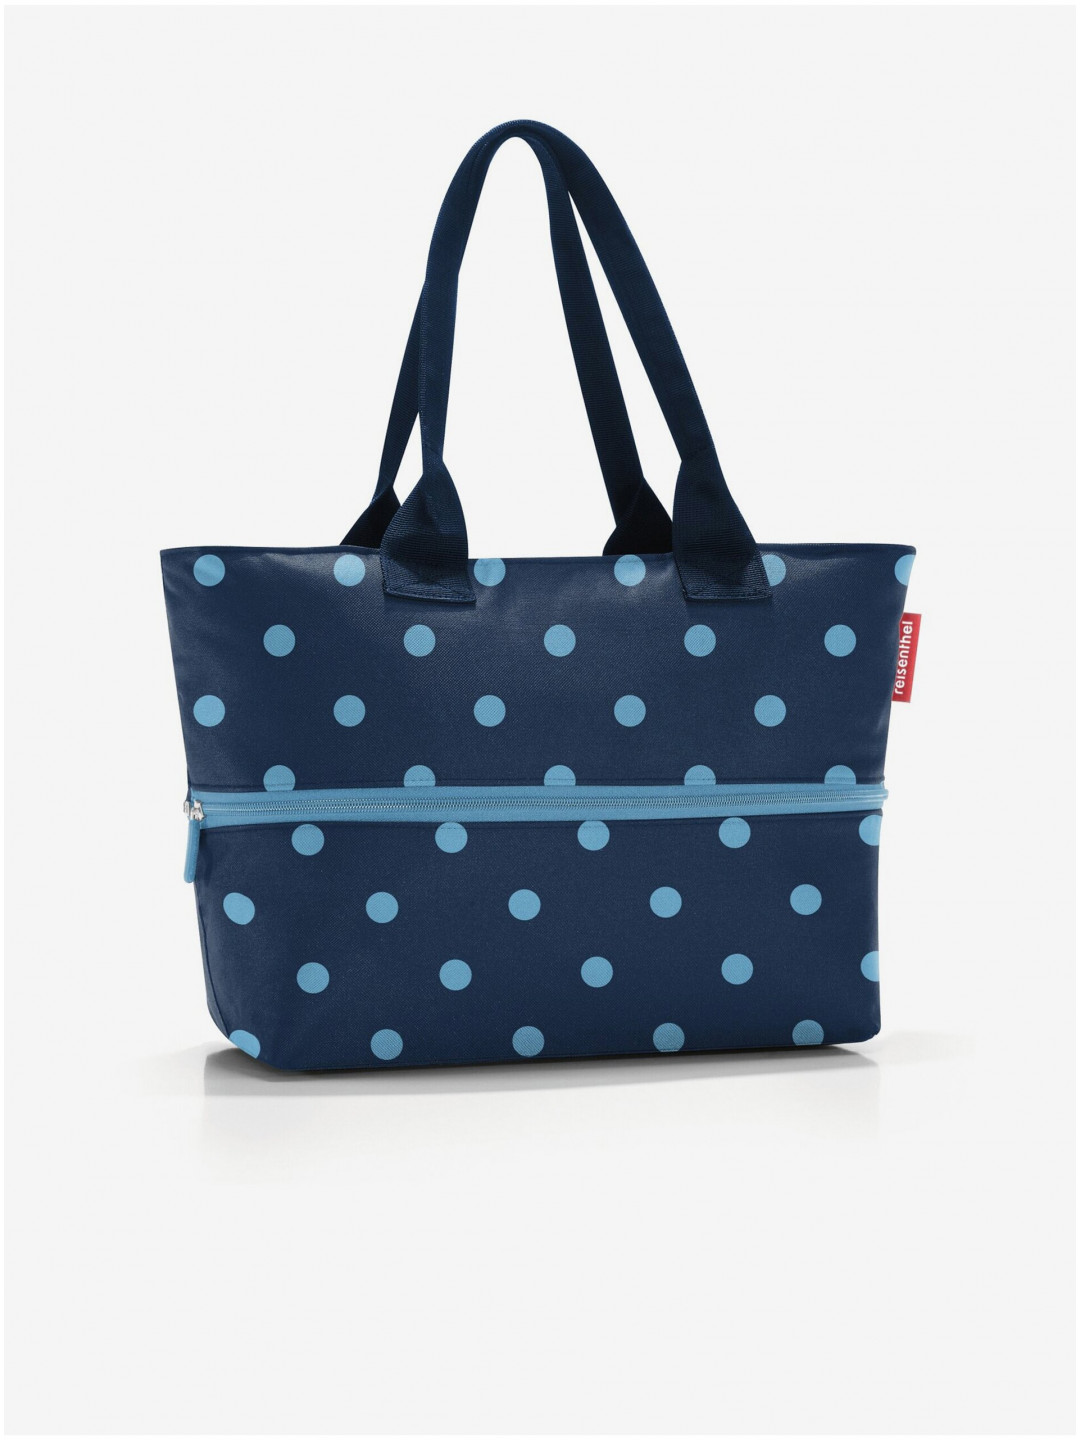 Tmavě modrá puntíkovaná shopper taška Reisenthel Shopper E1